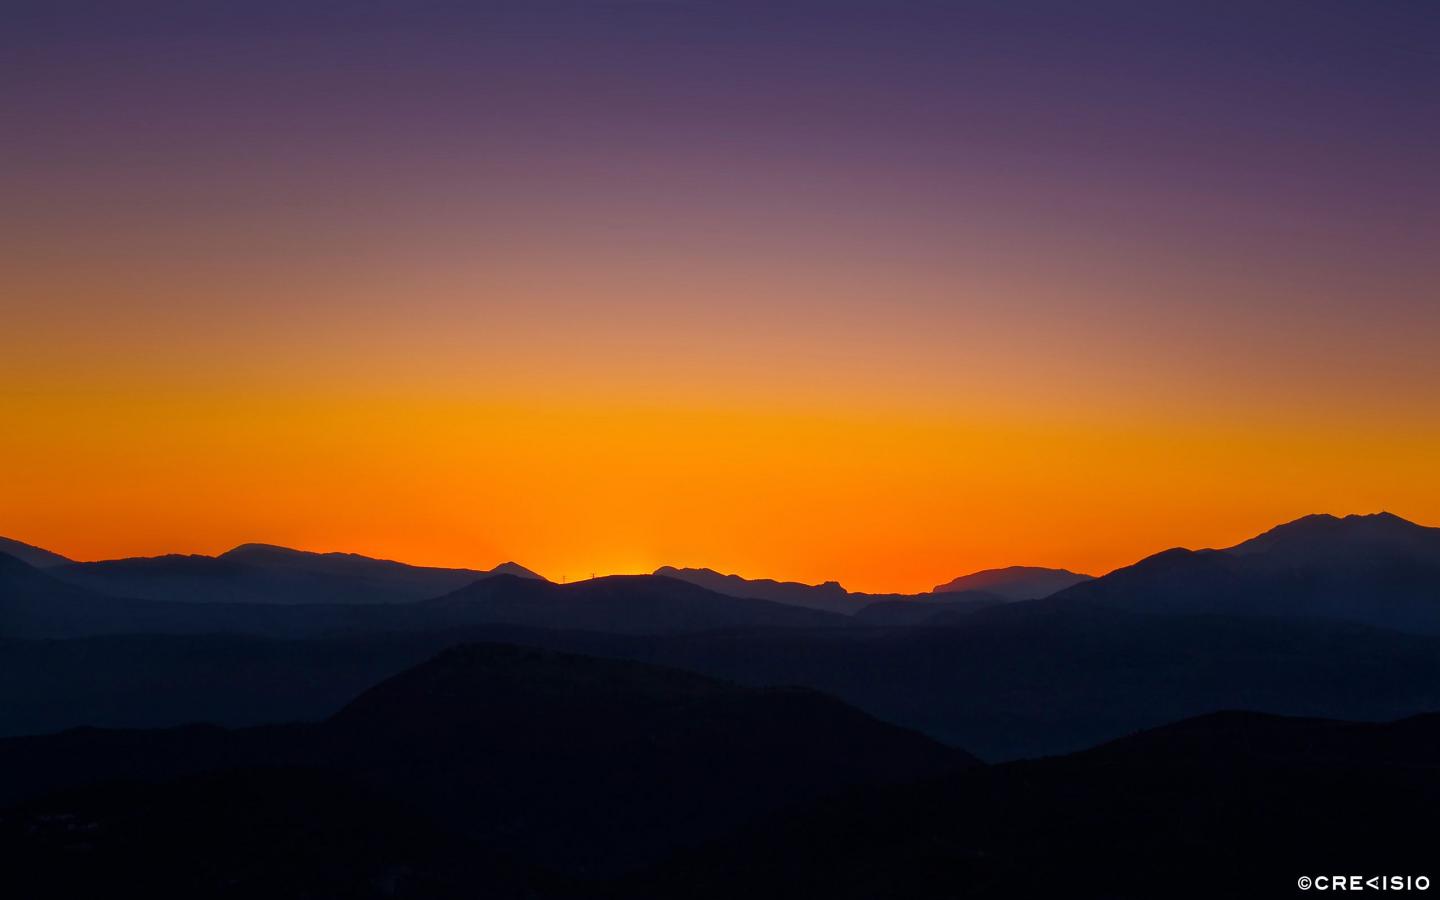 Horizon Sunset by Crevisio